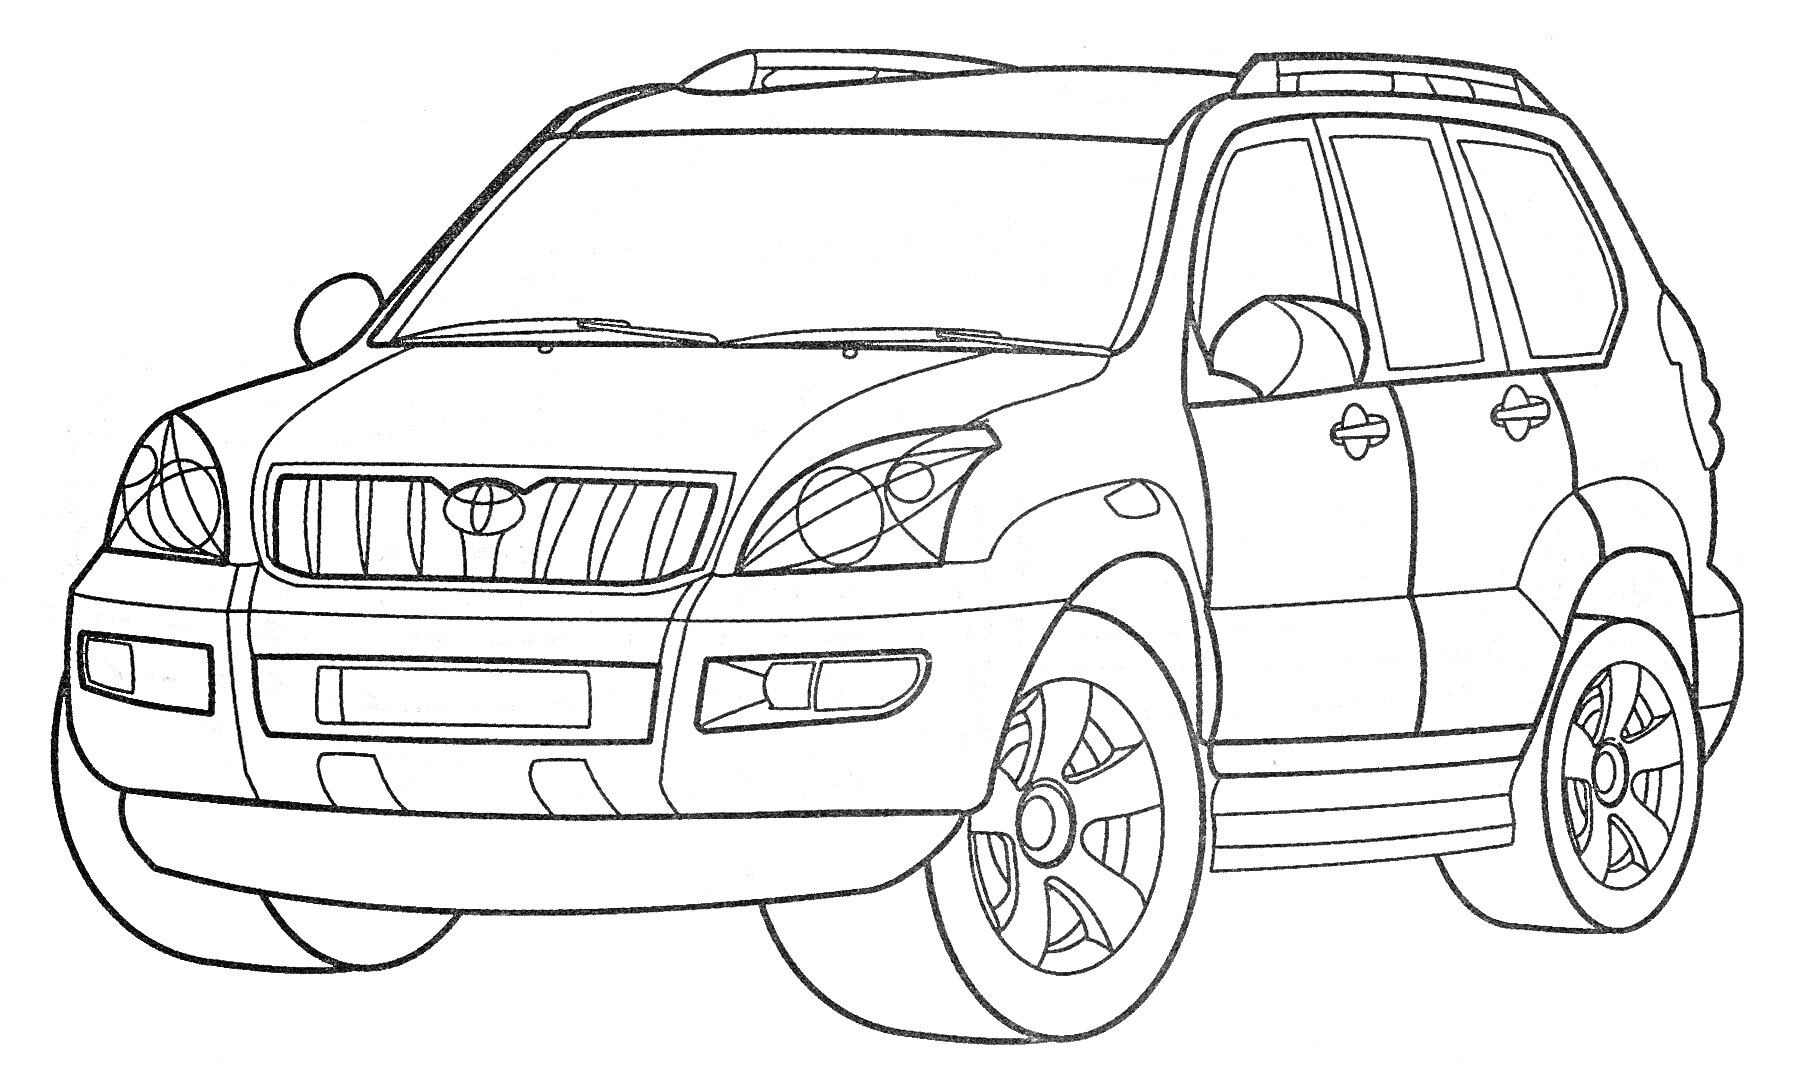 Раскраска Тойота внедорожник с четырьмя дверями, решеткой радиатора, фарами, зеркалами заднего вида и колесами